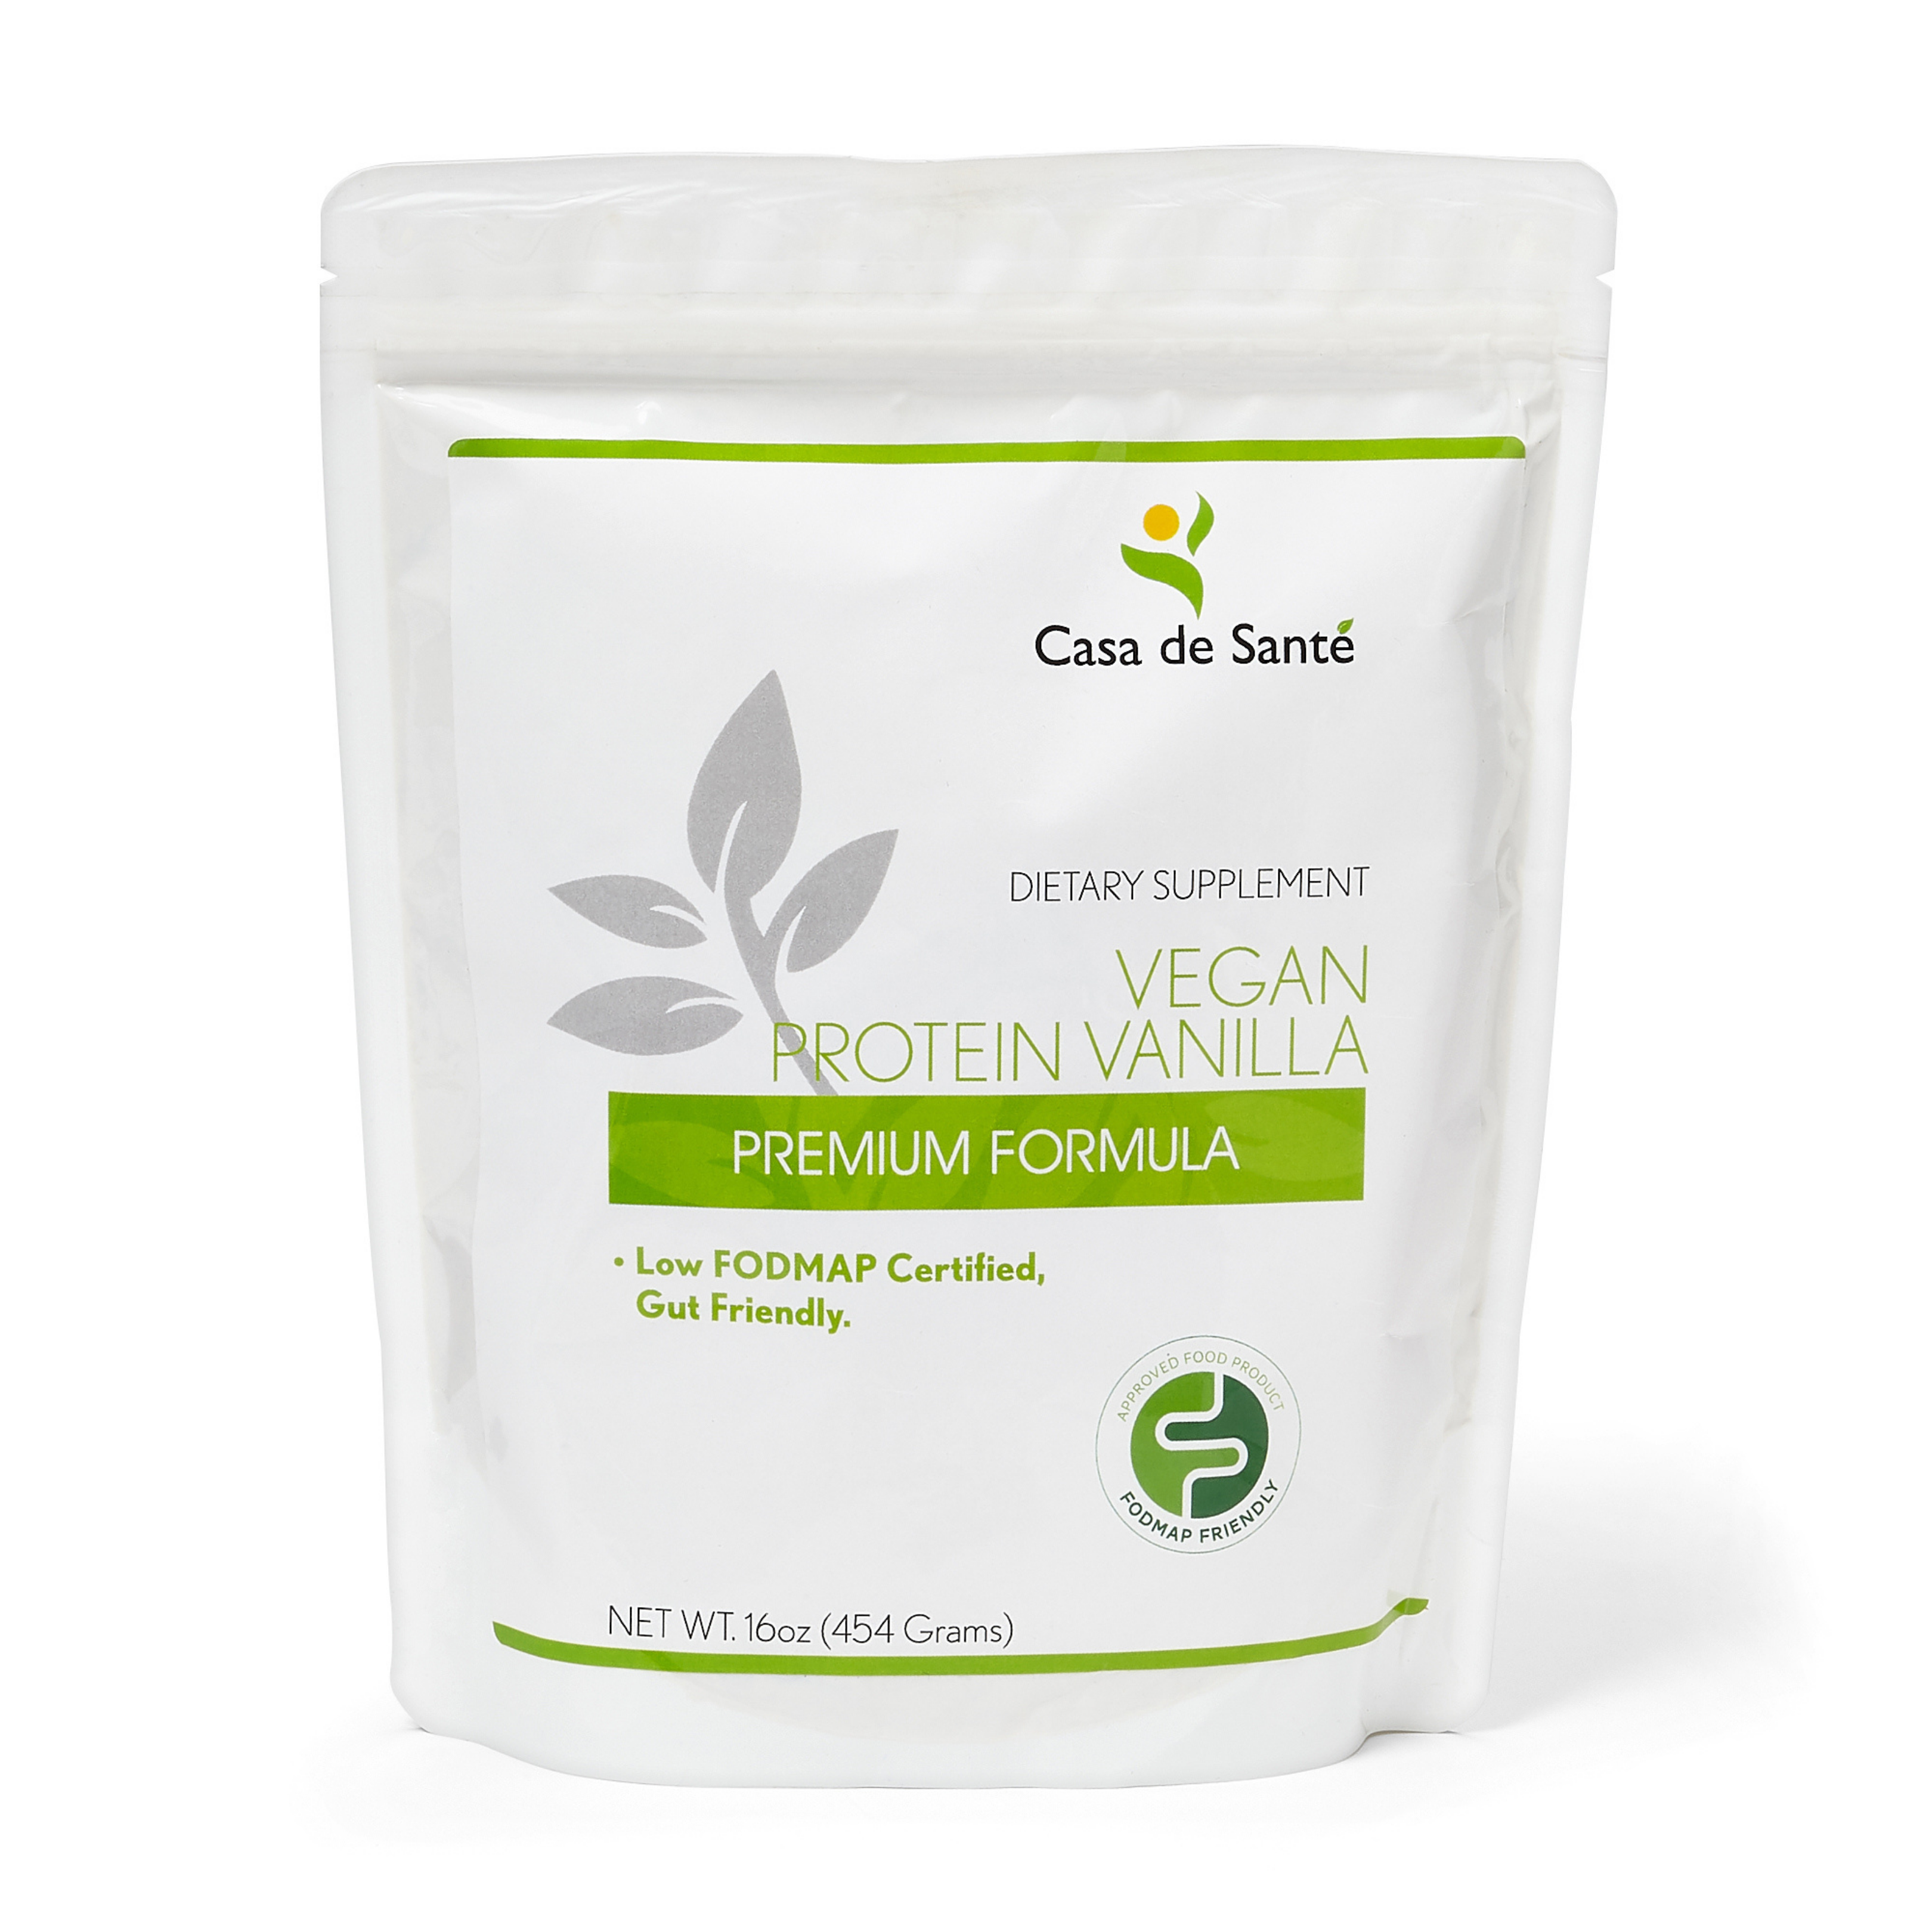 Low FODMAP Certified Vegan Protein Powder